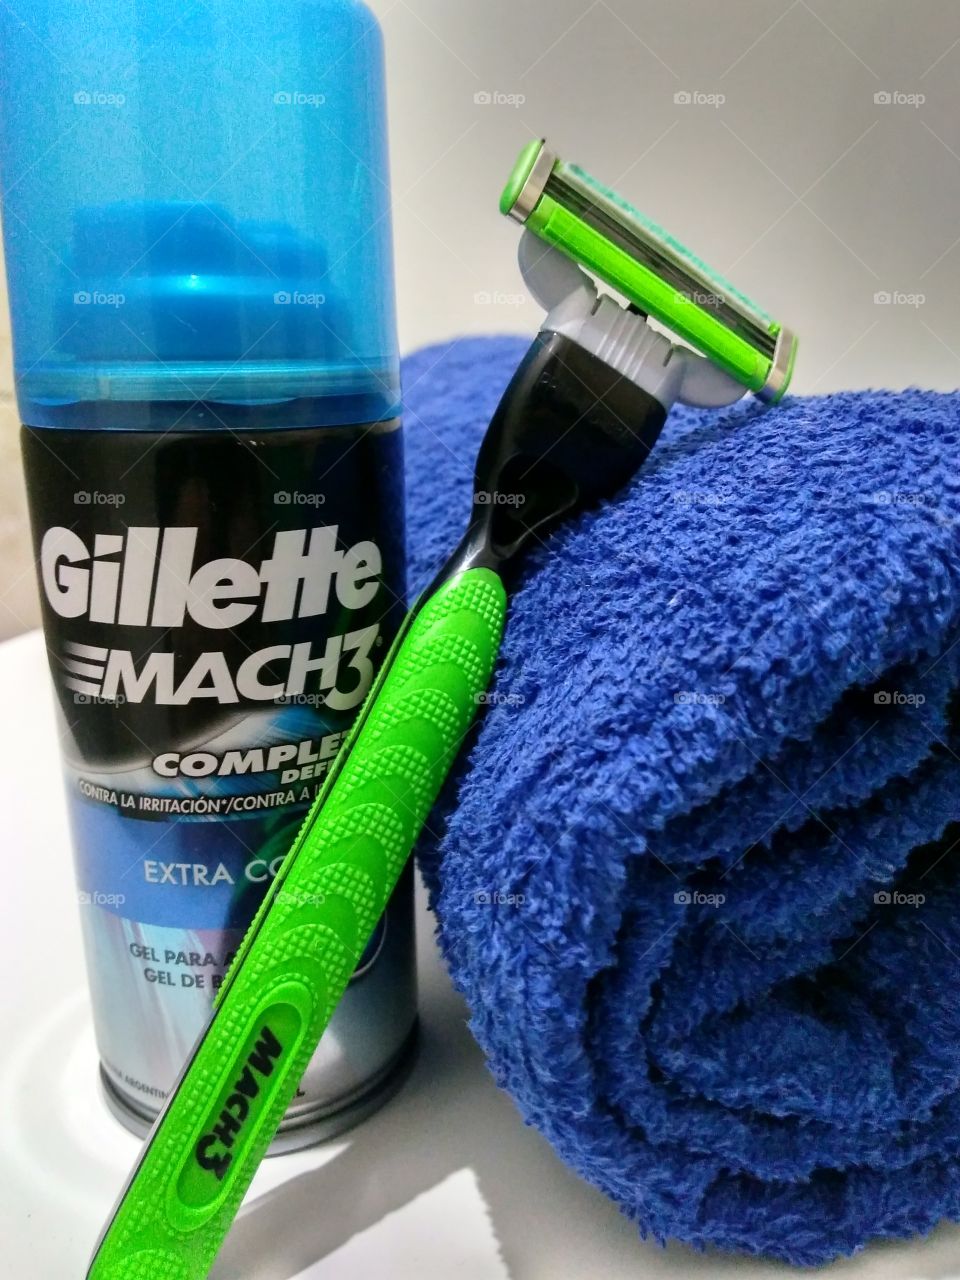 Gillette shave